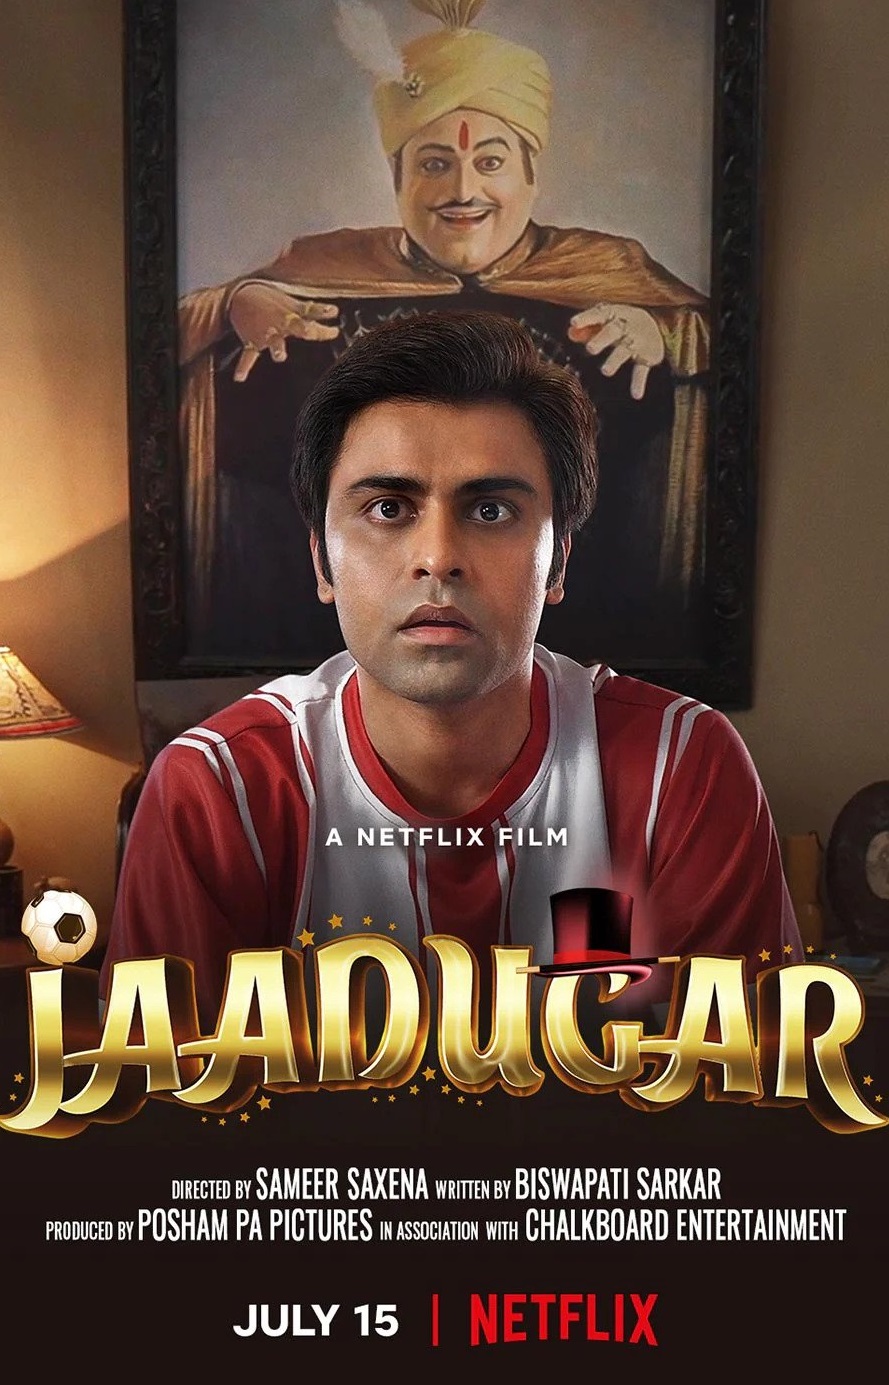 Jaadugar 2022 Tamil Dubbed Fantasy Movie Online